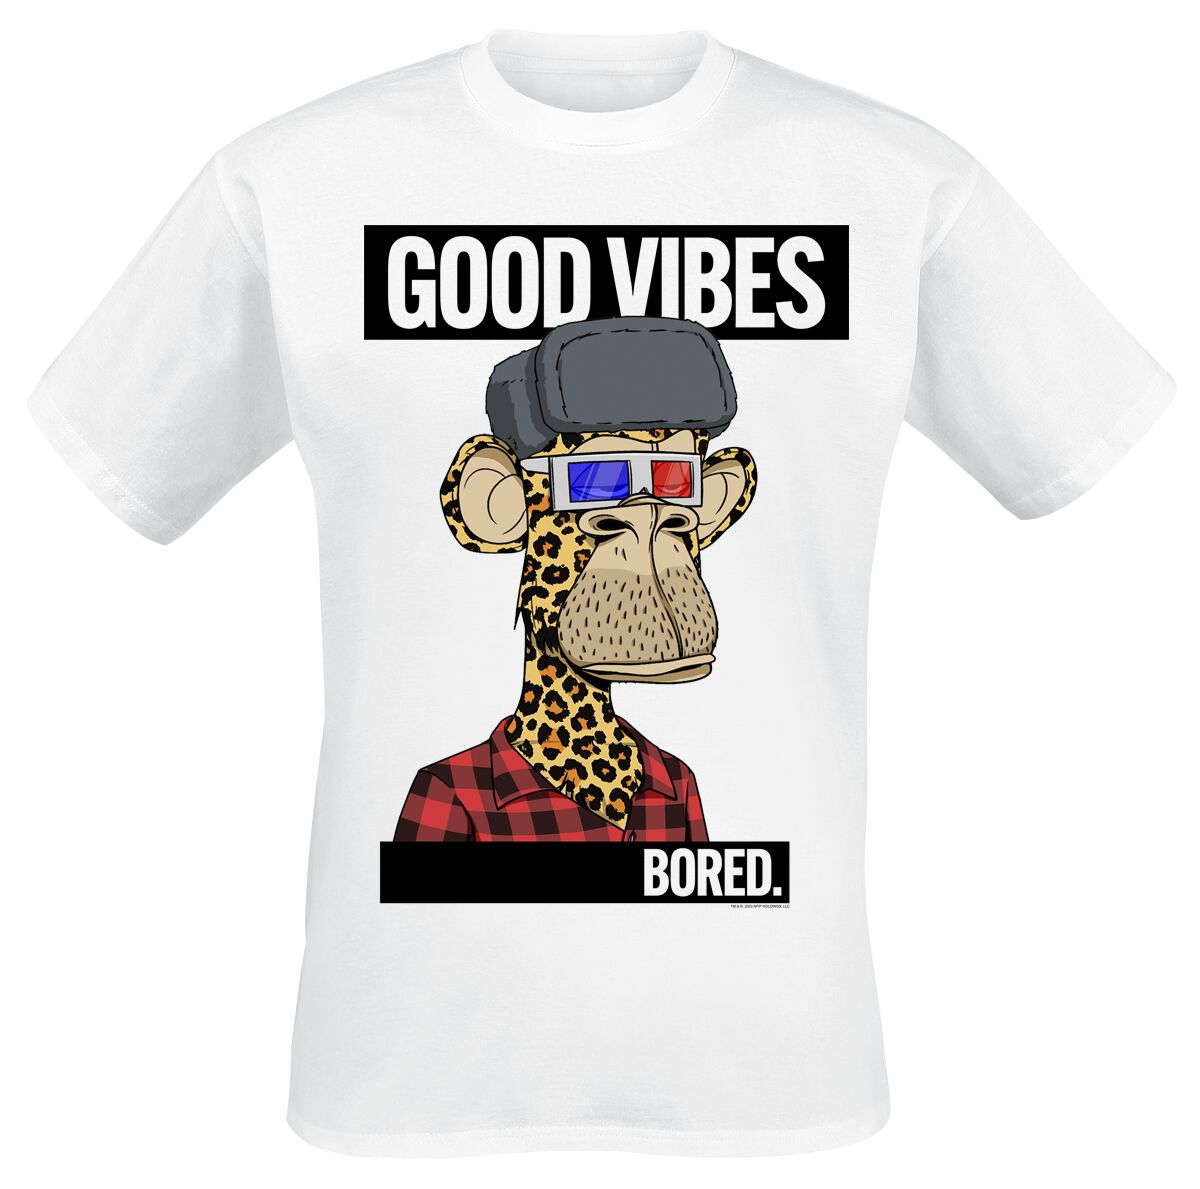 Bored Of Directors T-Shirt - Good Vibes - S bis XXL - für Männer - Größe M - weiß  - EMP exklusives Merchandise!